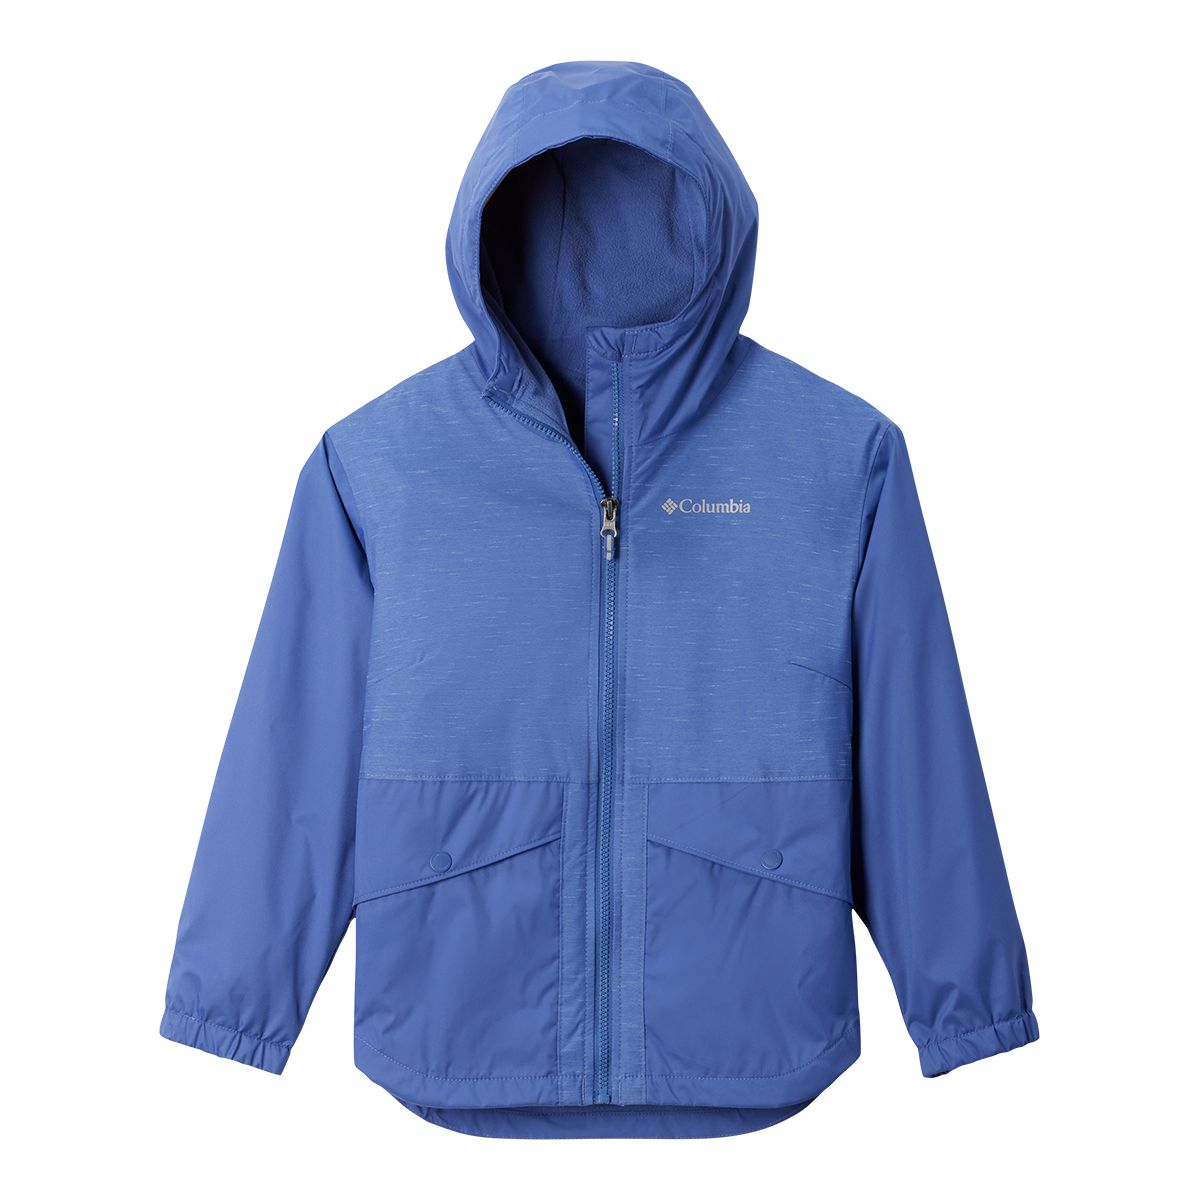 Image of Columbia Youth Unisex Rainy Trails Fleece Lined Jacket